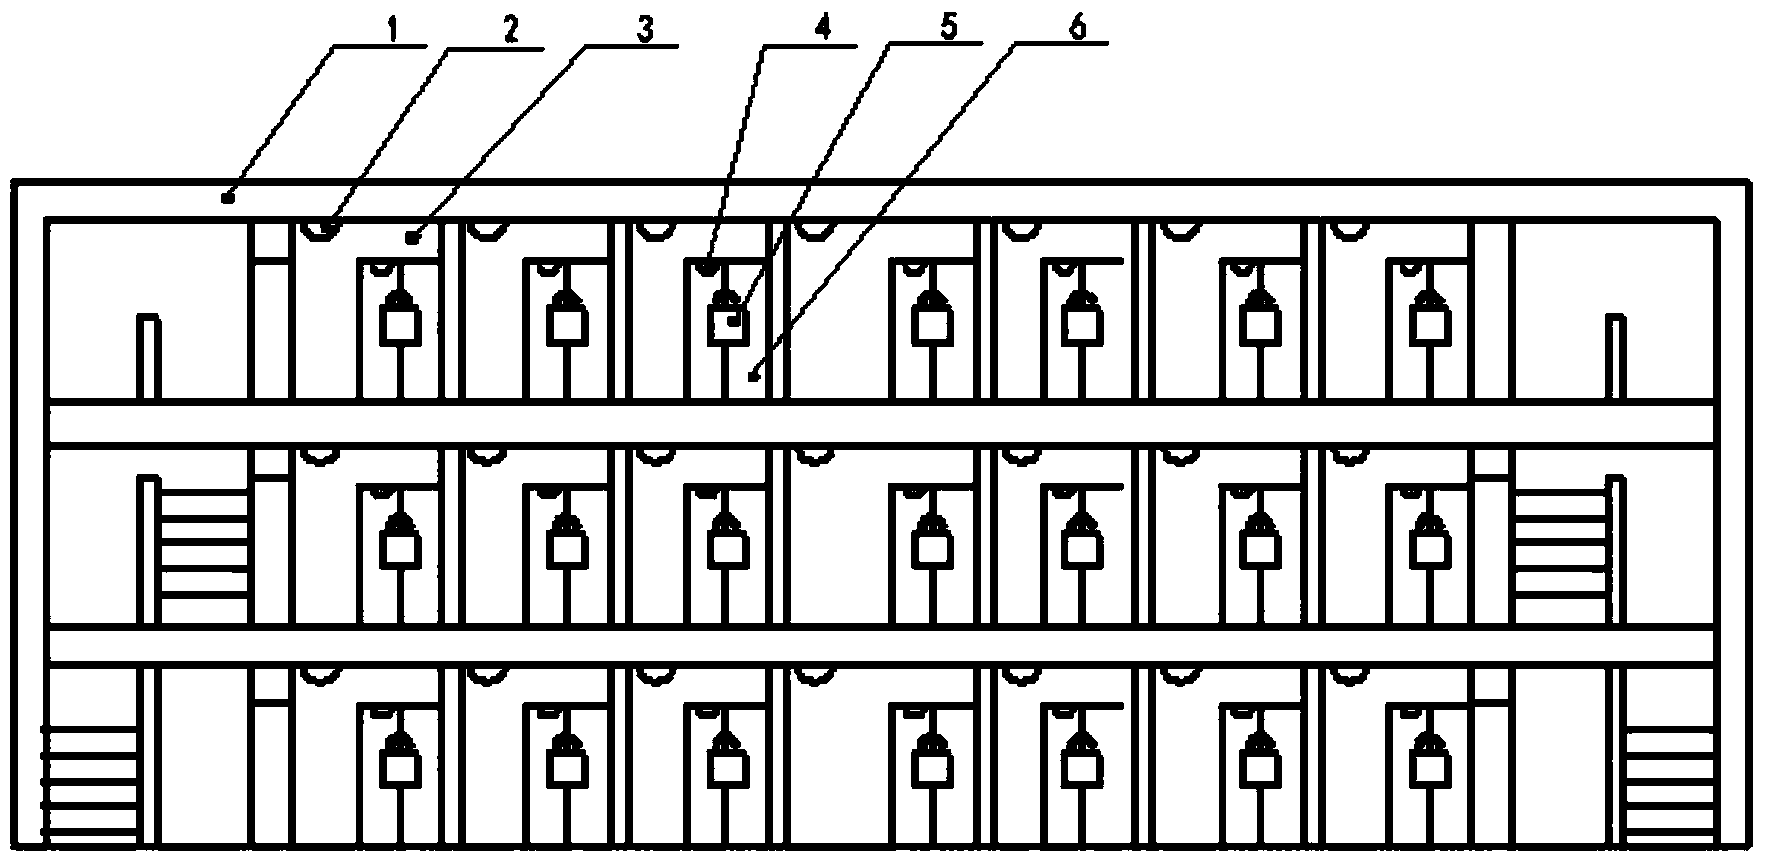 Intelligent navigation control method for five-prevention lock of transformer substation